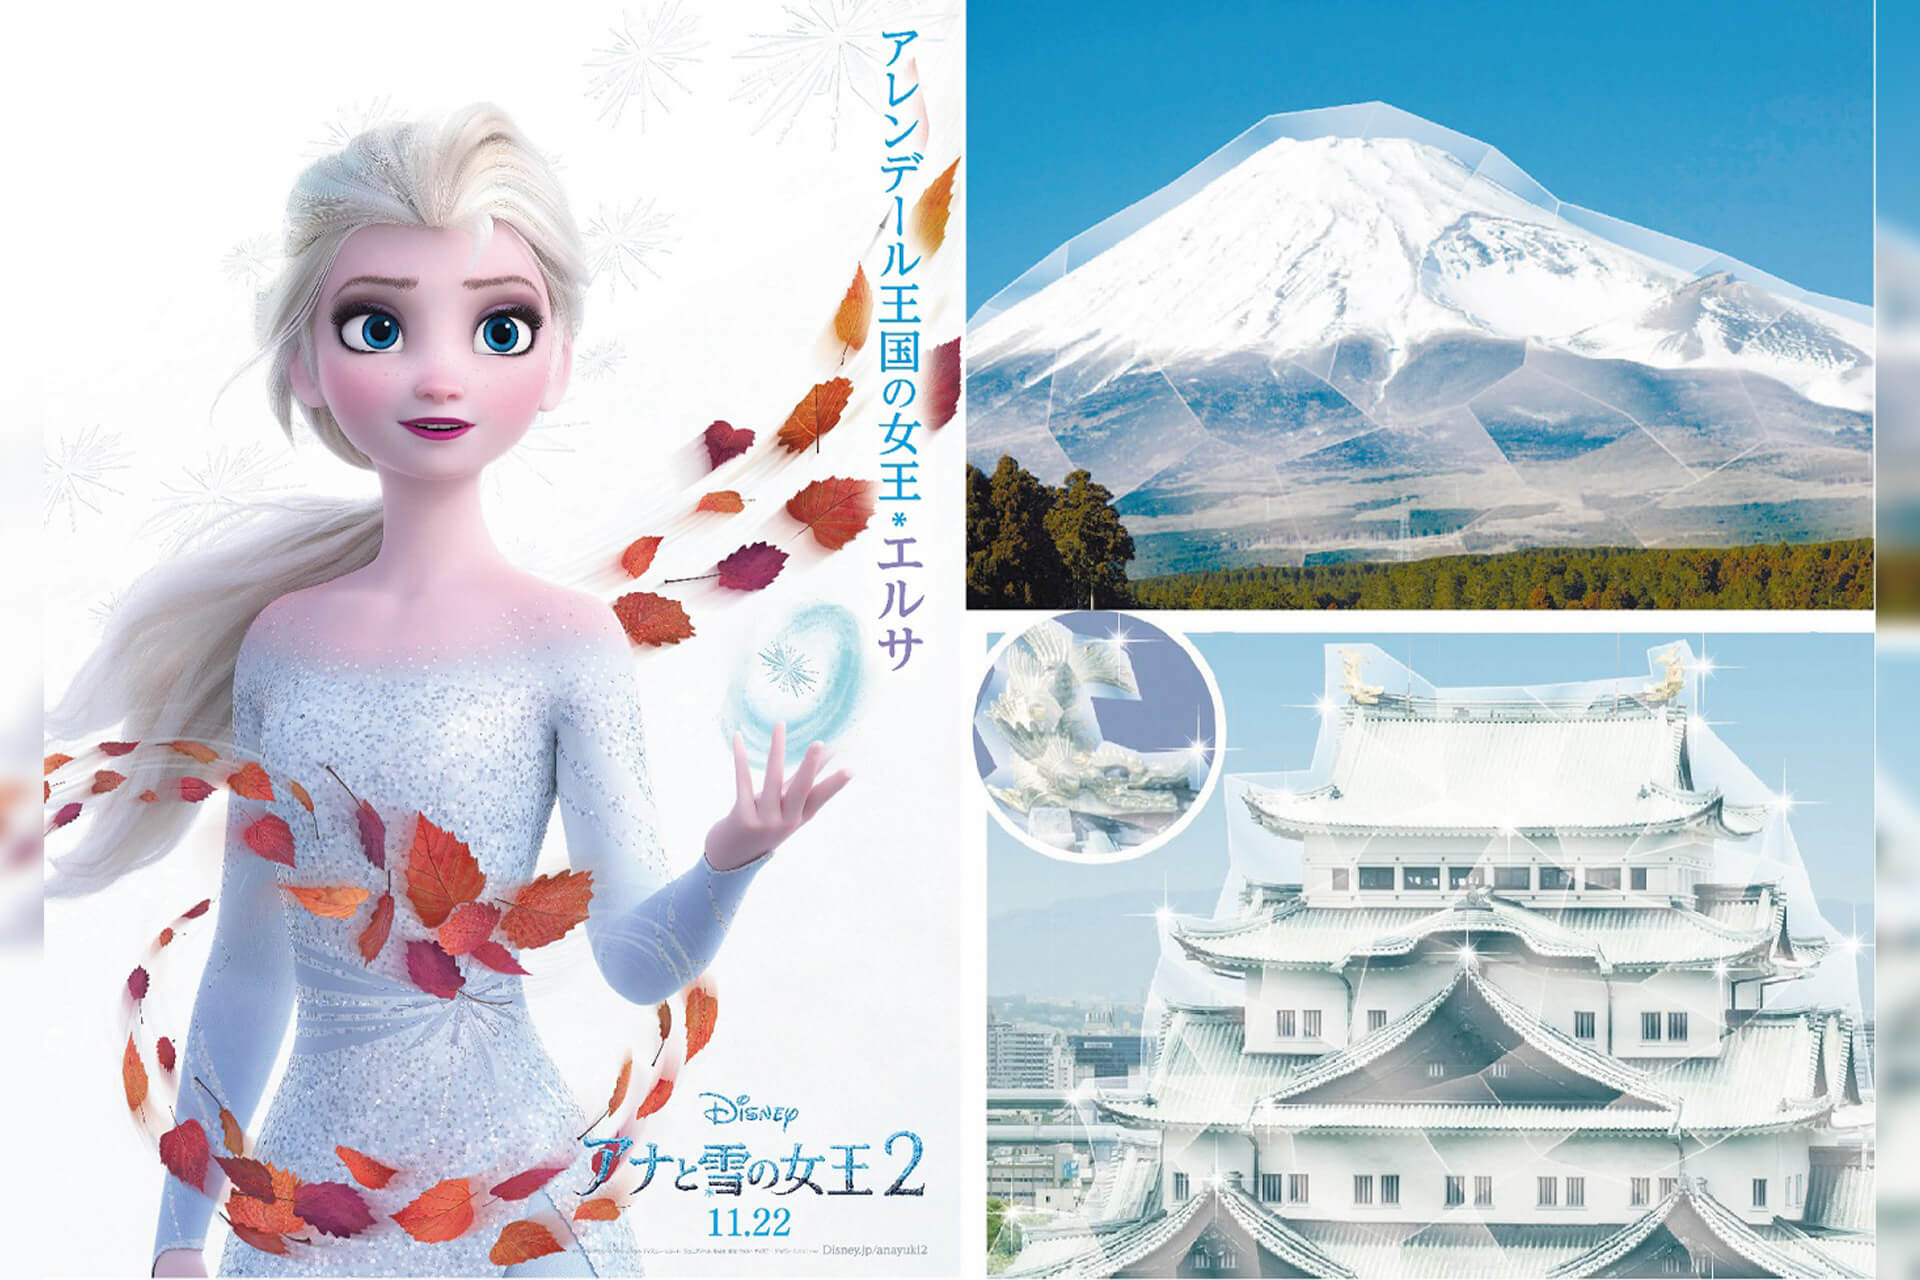 エルサの魔法で日本中が凍る アナと雪の女王2 公開直前 エルサが日本中を凍らせる スペシャル企画スタート Qetic